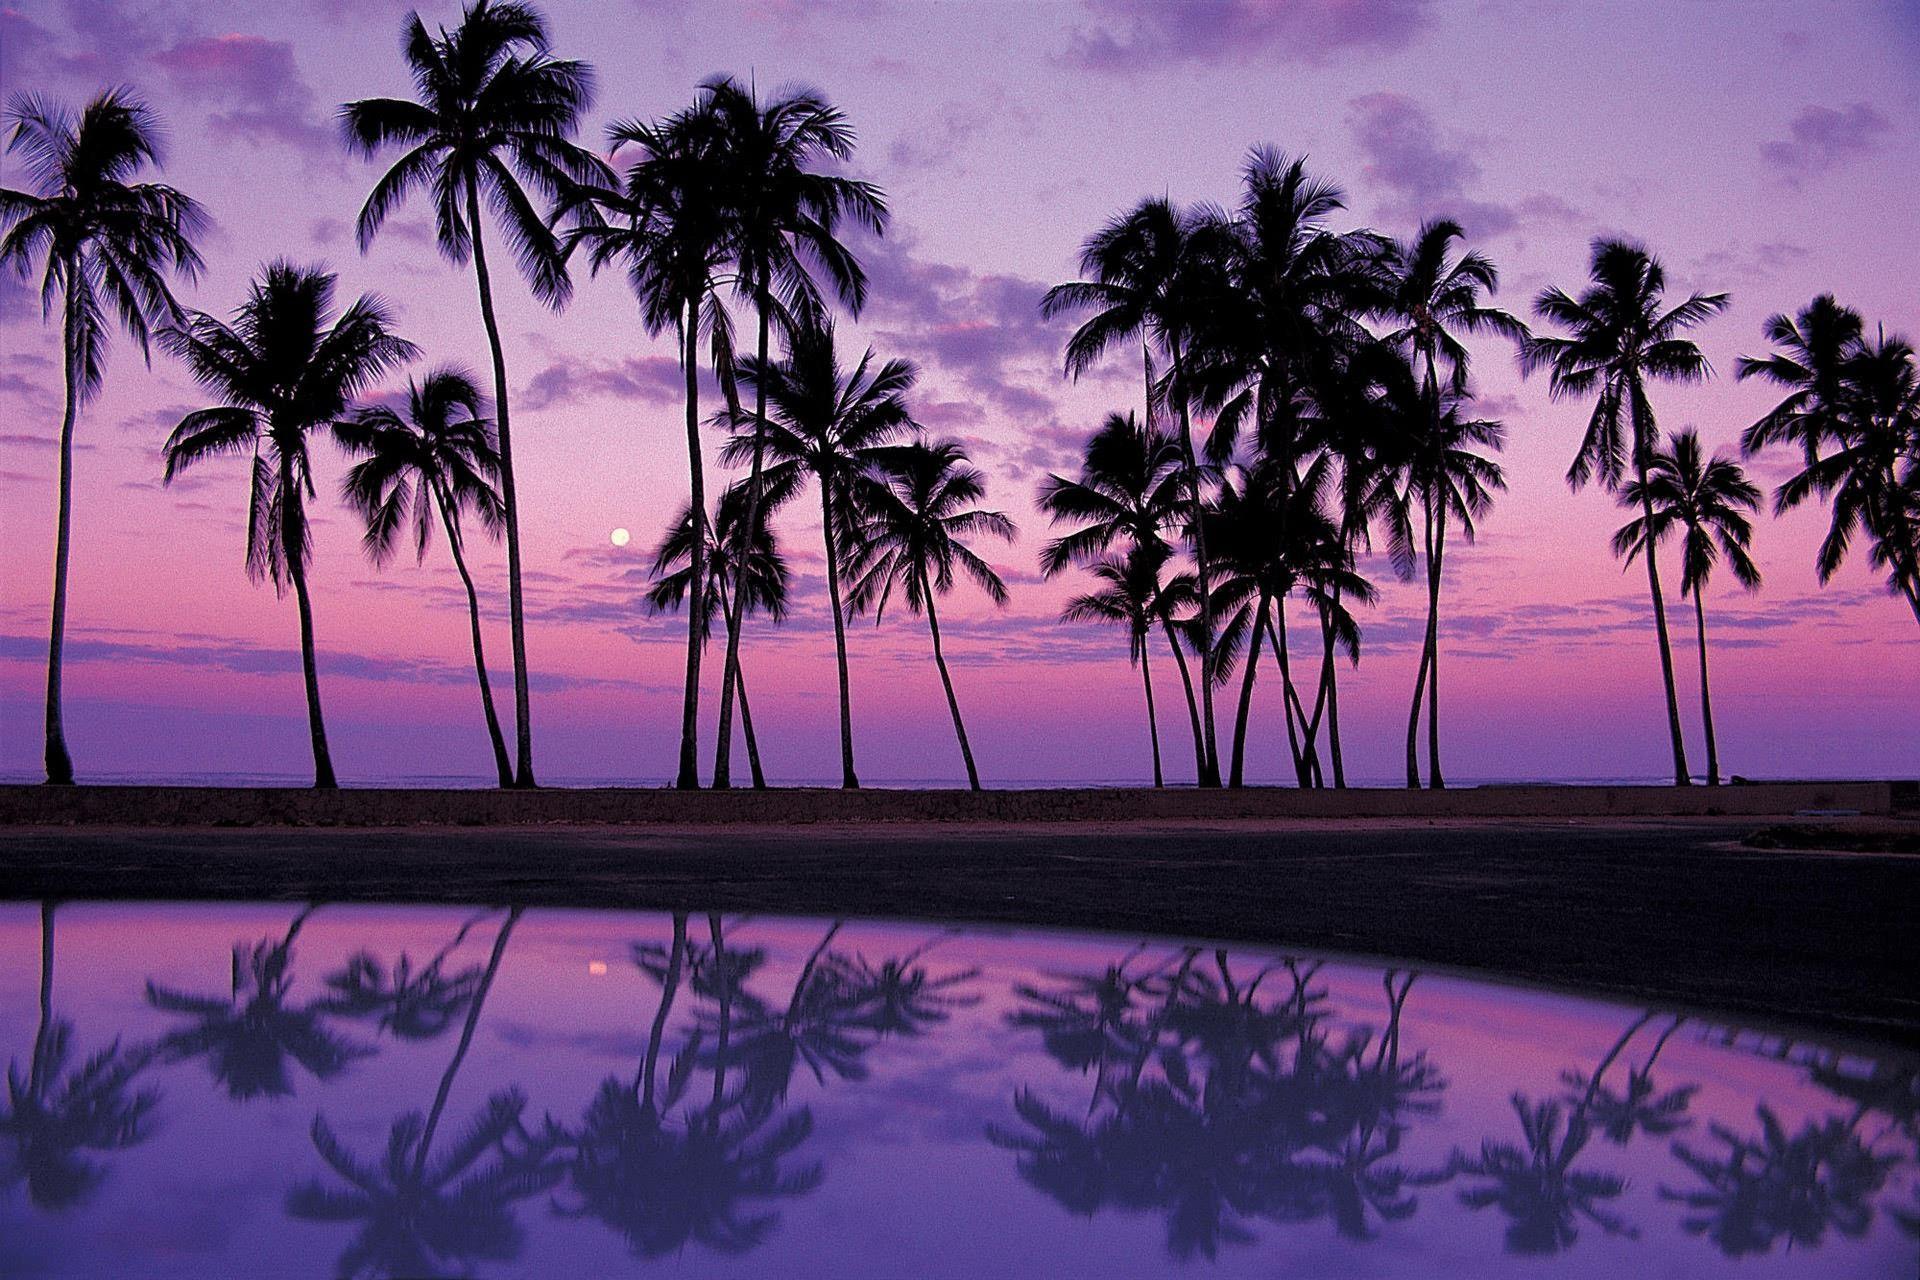 Ocean Purple Sunset Wallpapers Top Free Ocean Purple Sunset Backgrounds Wallpaperaccess